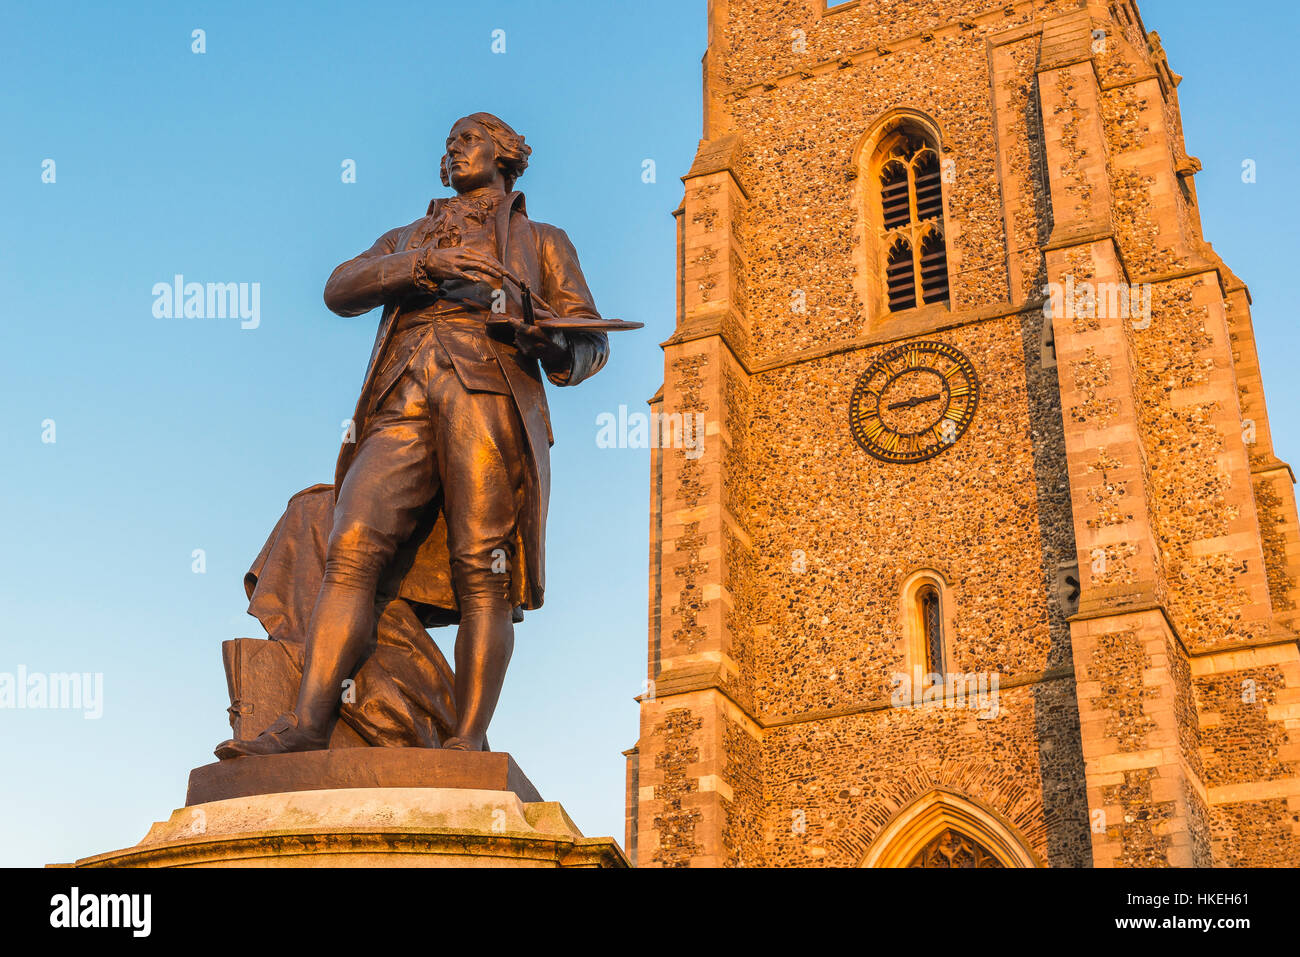 Sudbury Suffolk UK, vista della statua di Thomas Gainsborough e della torre della chiesa di San Pietro situata nella piazza del mercato di Sudbury, Inghilterra, Regno Unito Foto Stock